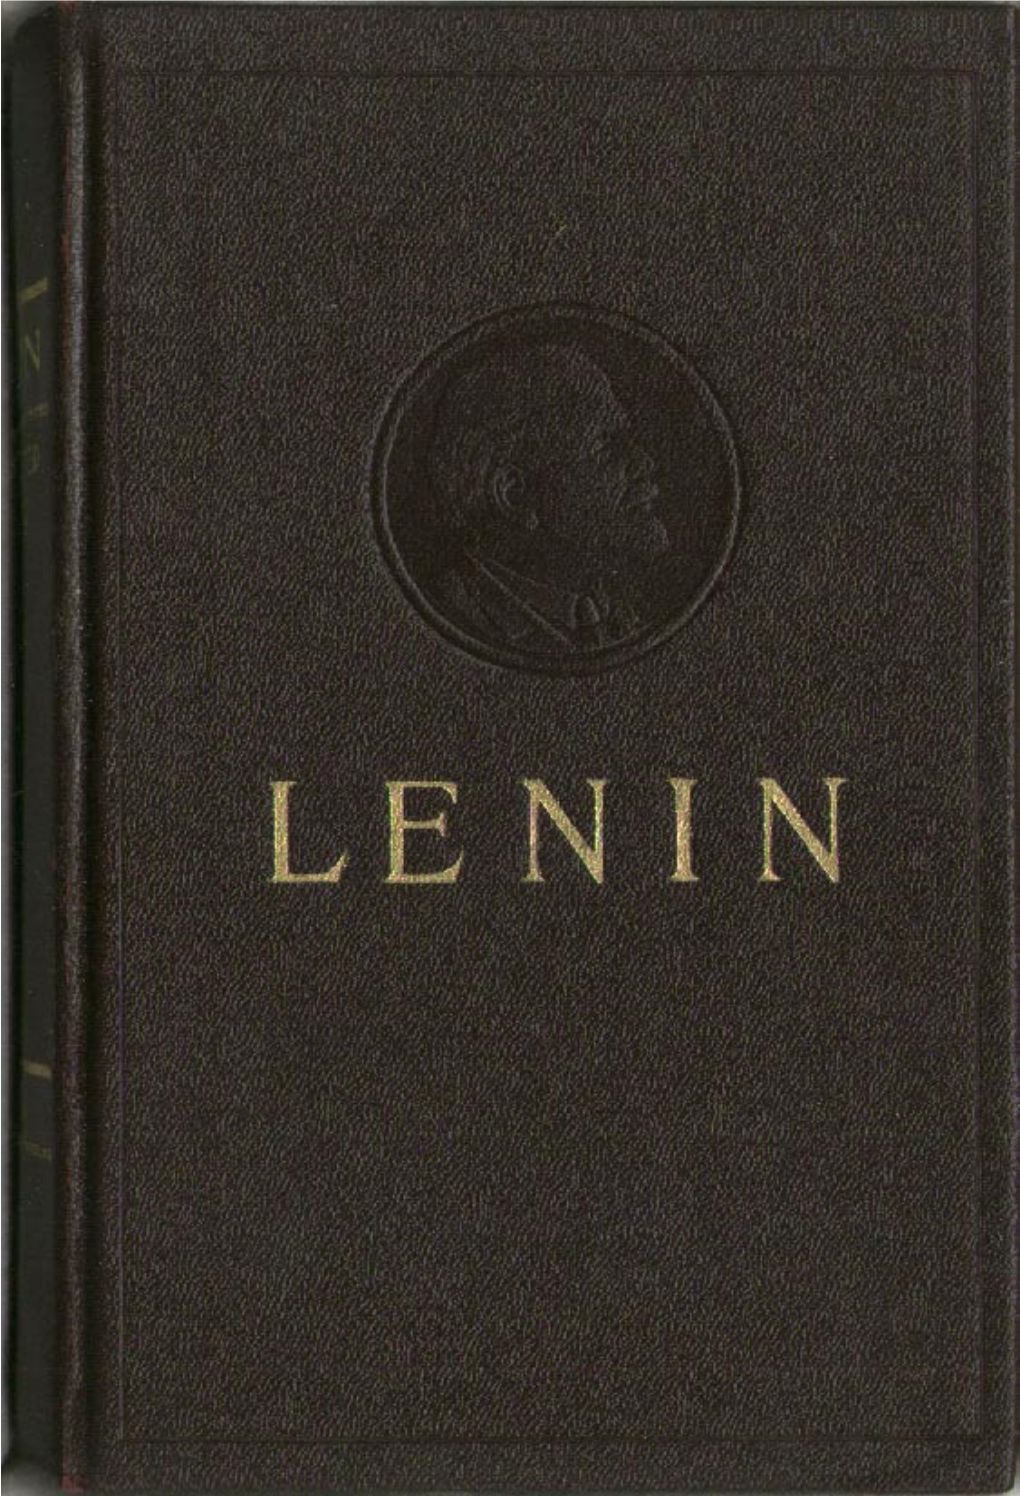 Lenin’S Fiftieth Birthday